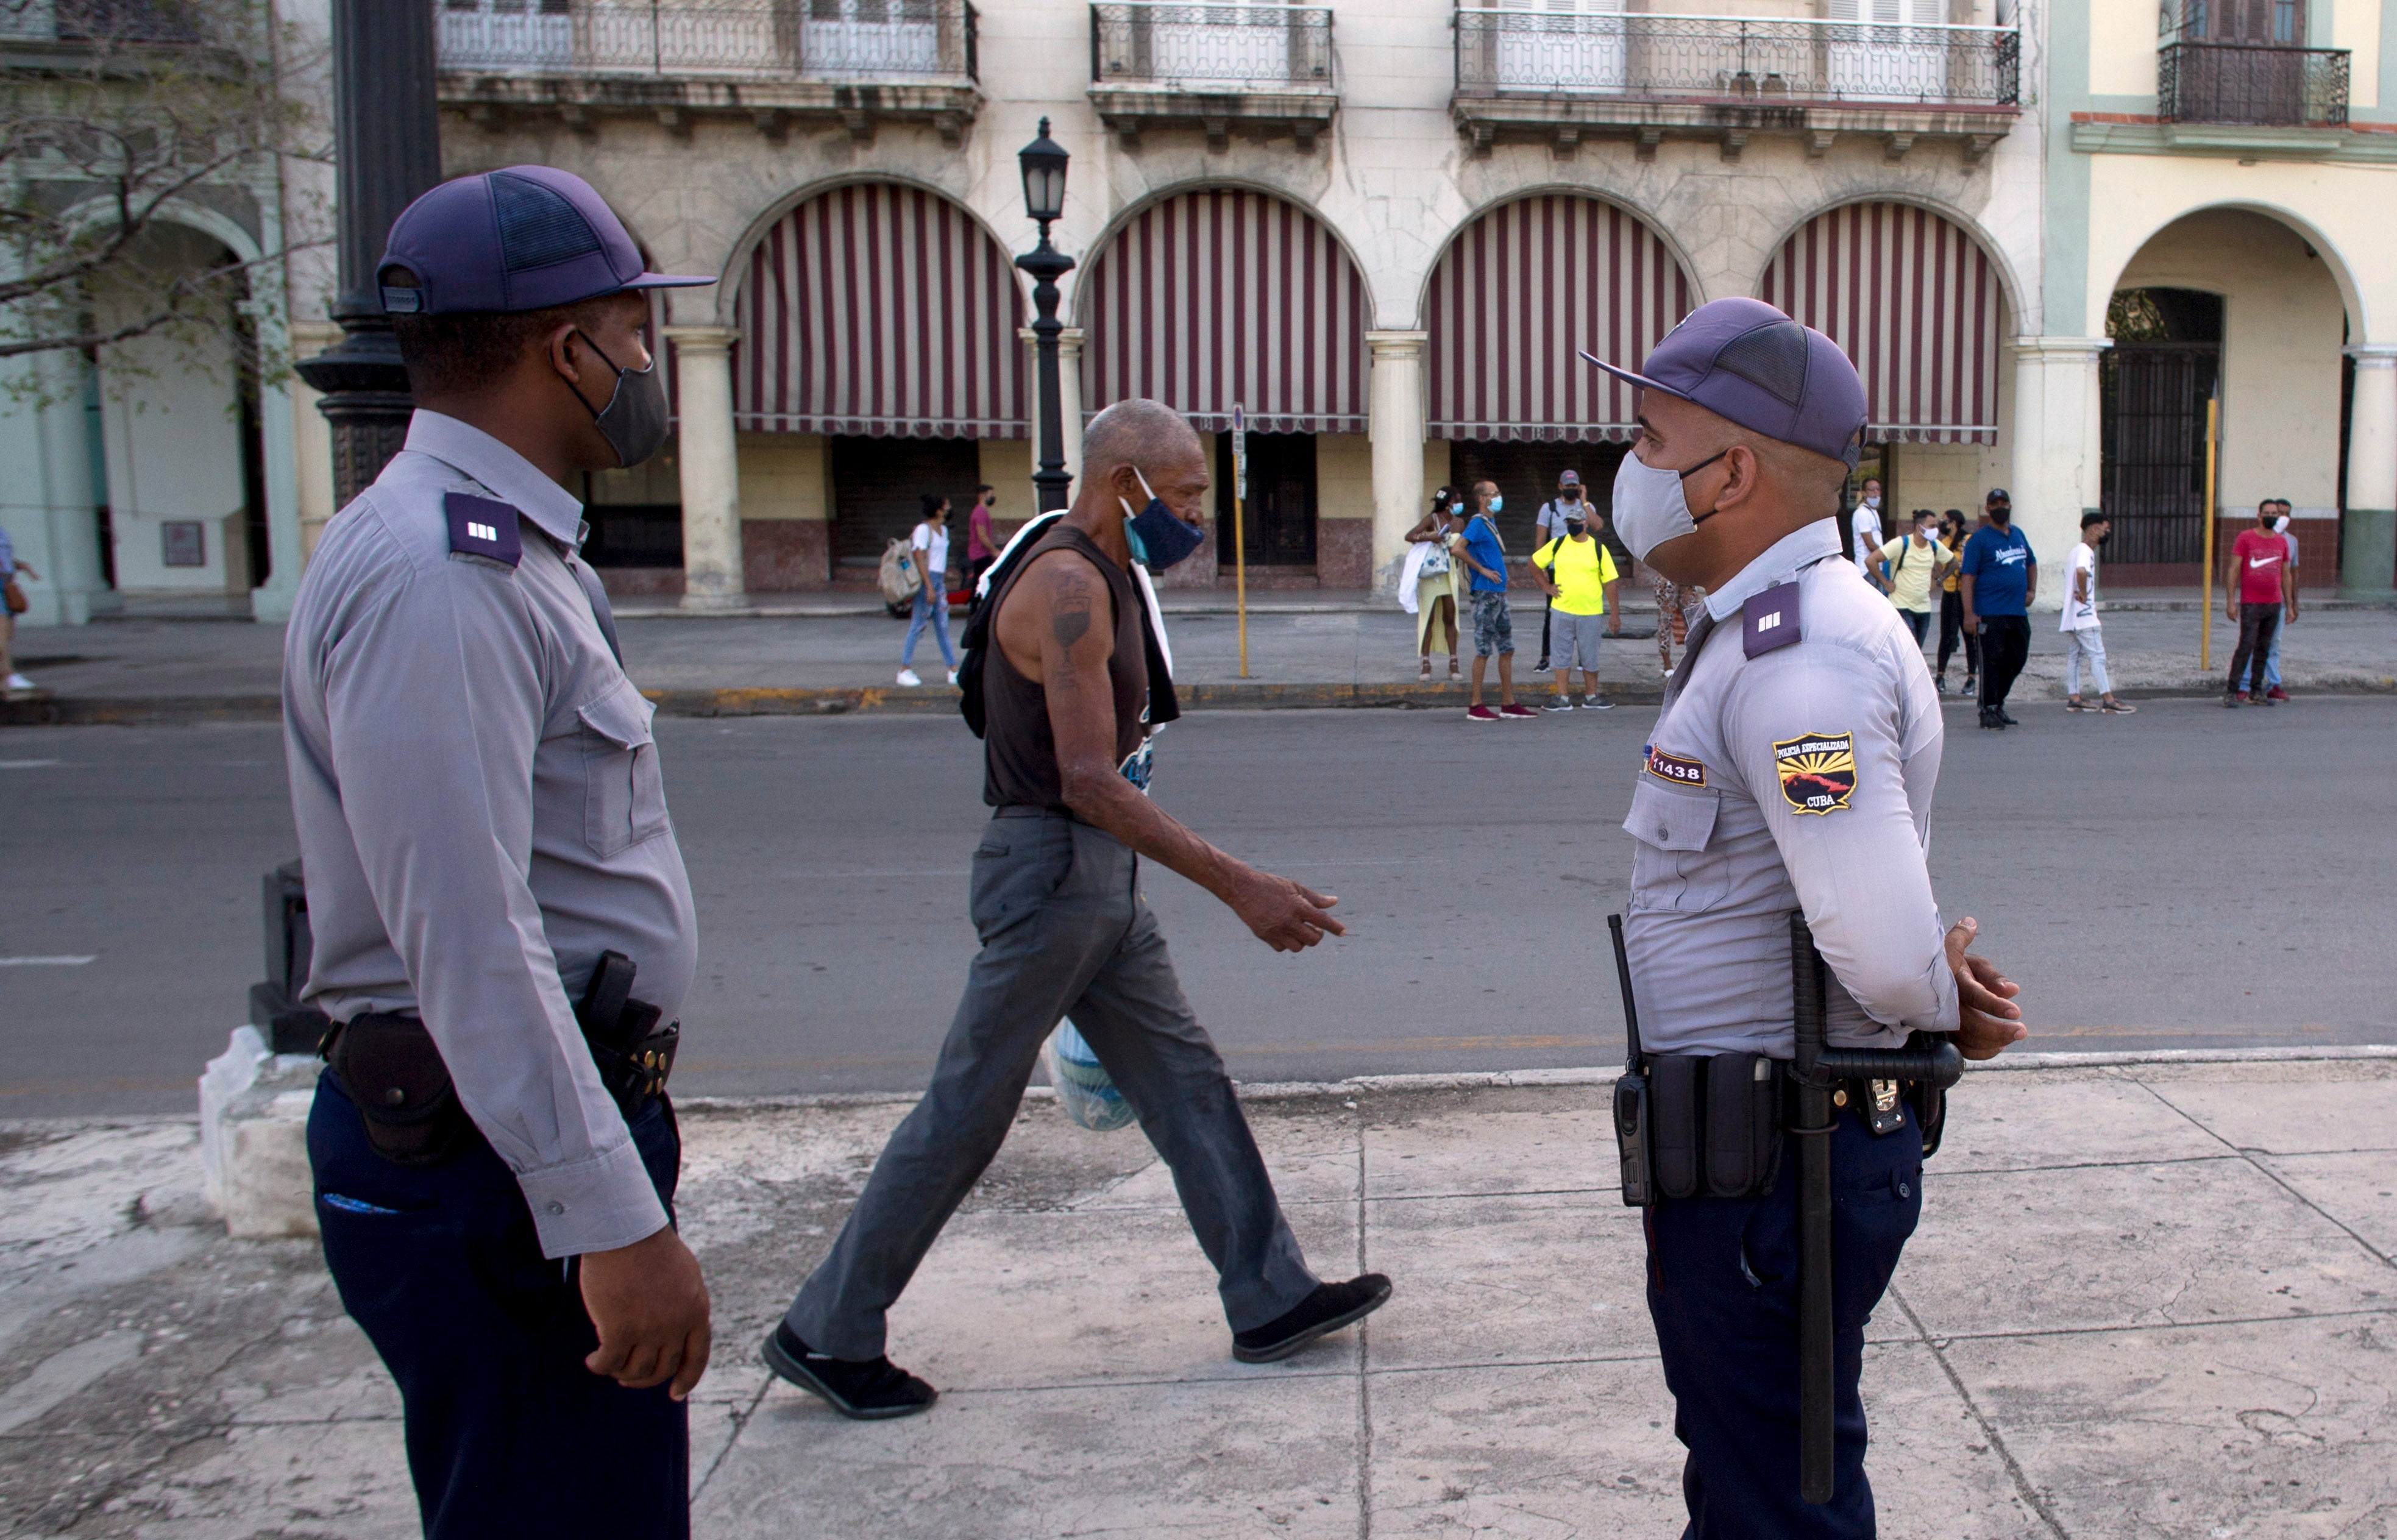 Cuba Protest